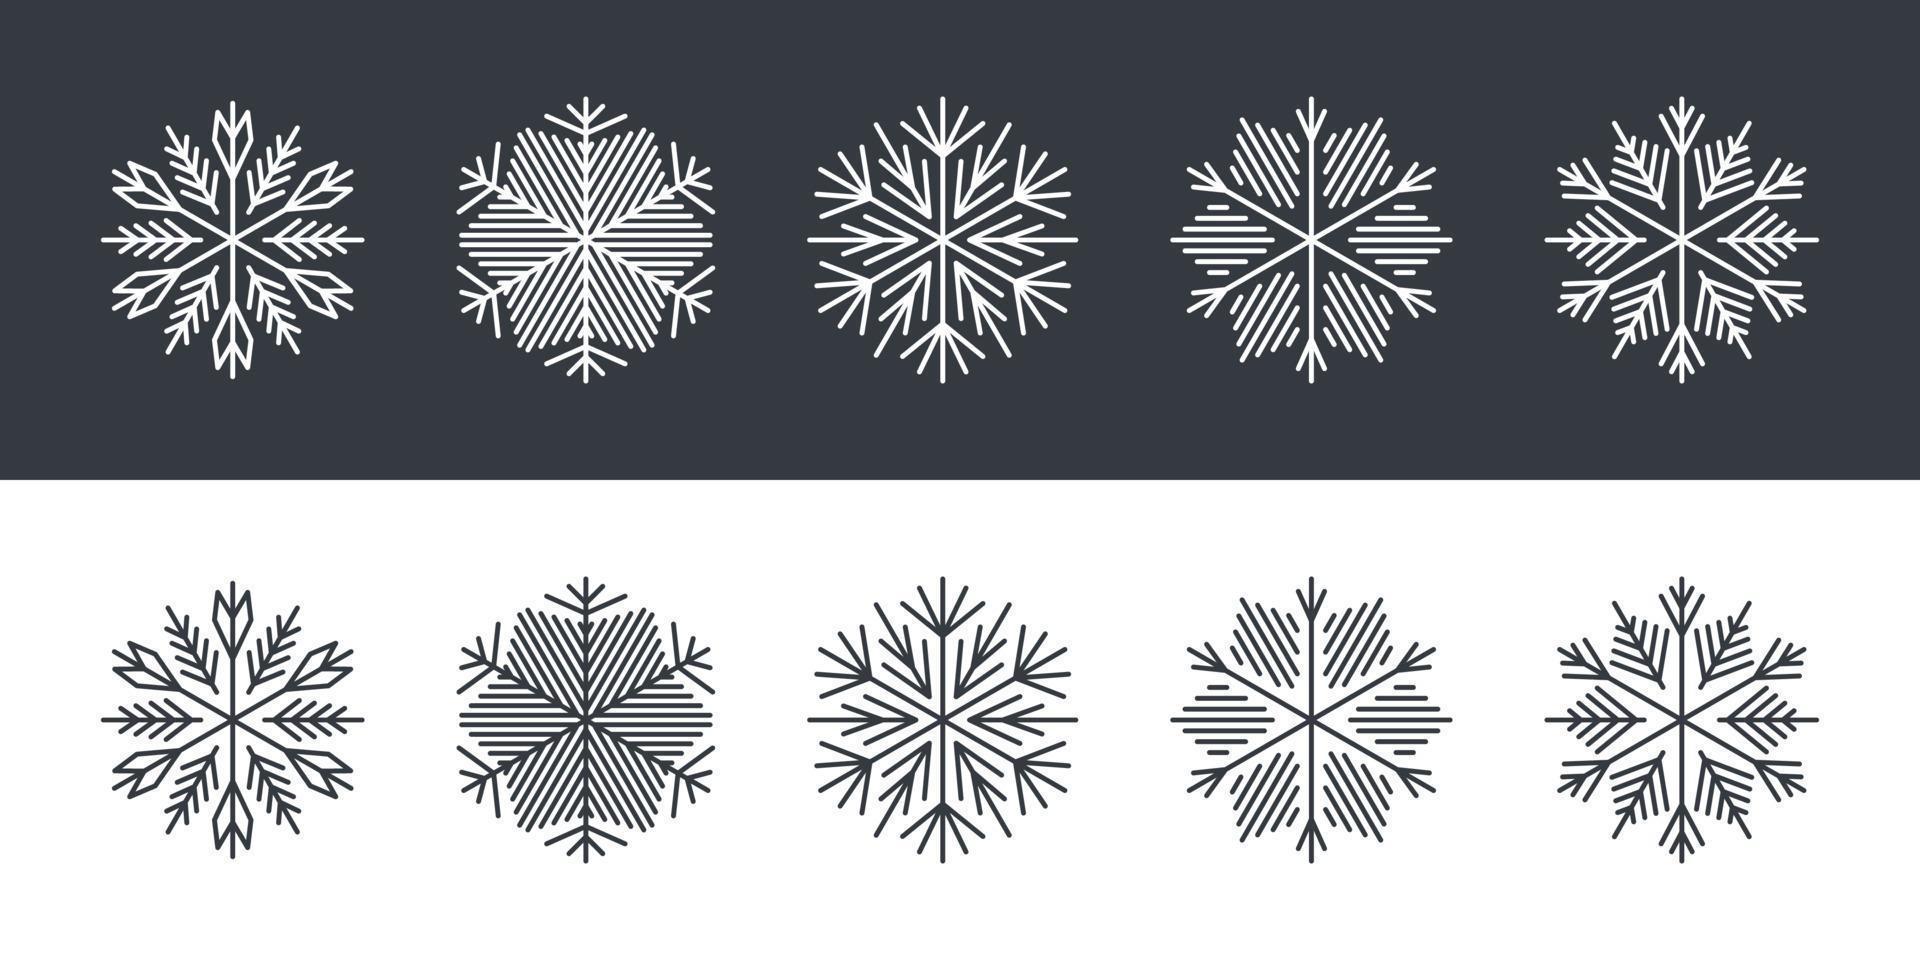 Schneeflocken in verschiedenen Formen. Schneeflocken im flachen Stil auf schwarzem und weißem Hintergrund. Vektor-Illustration vektor